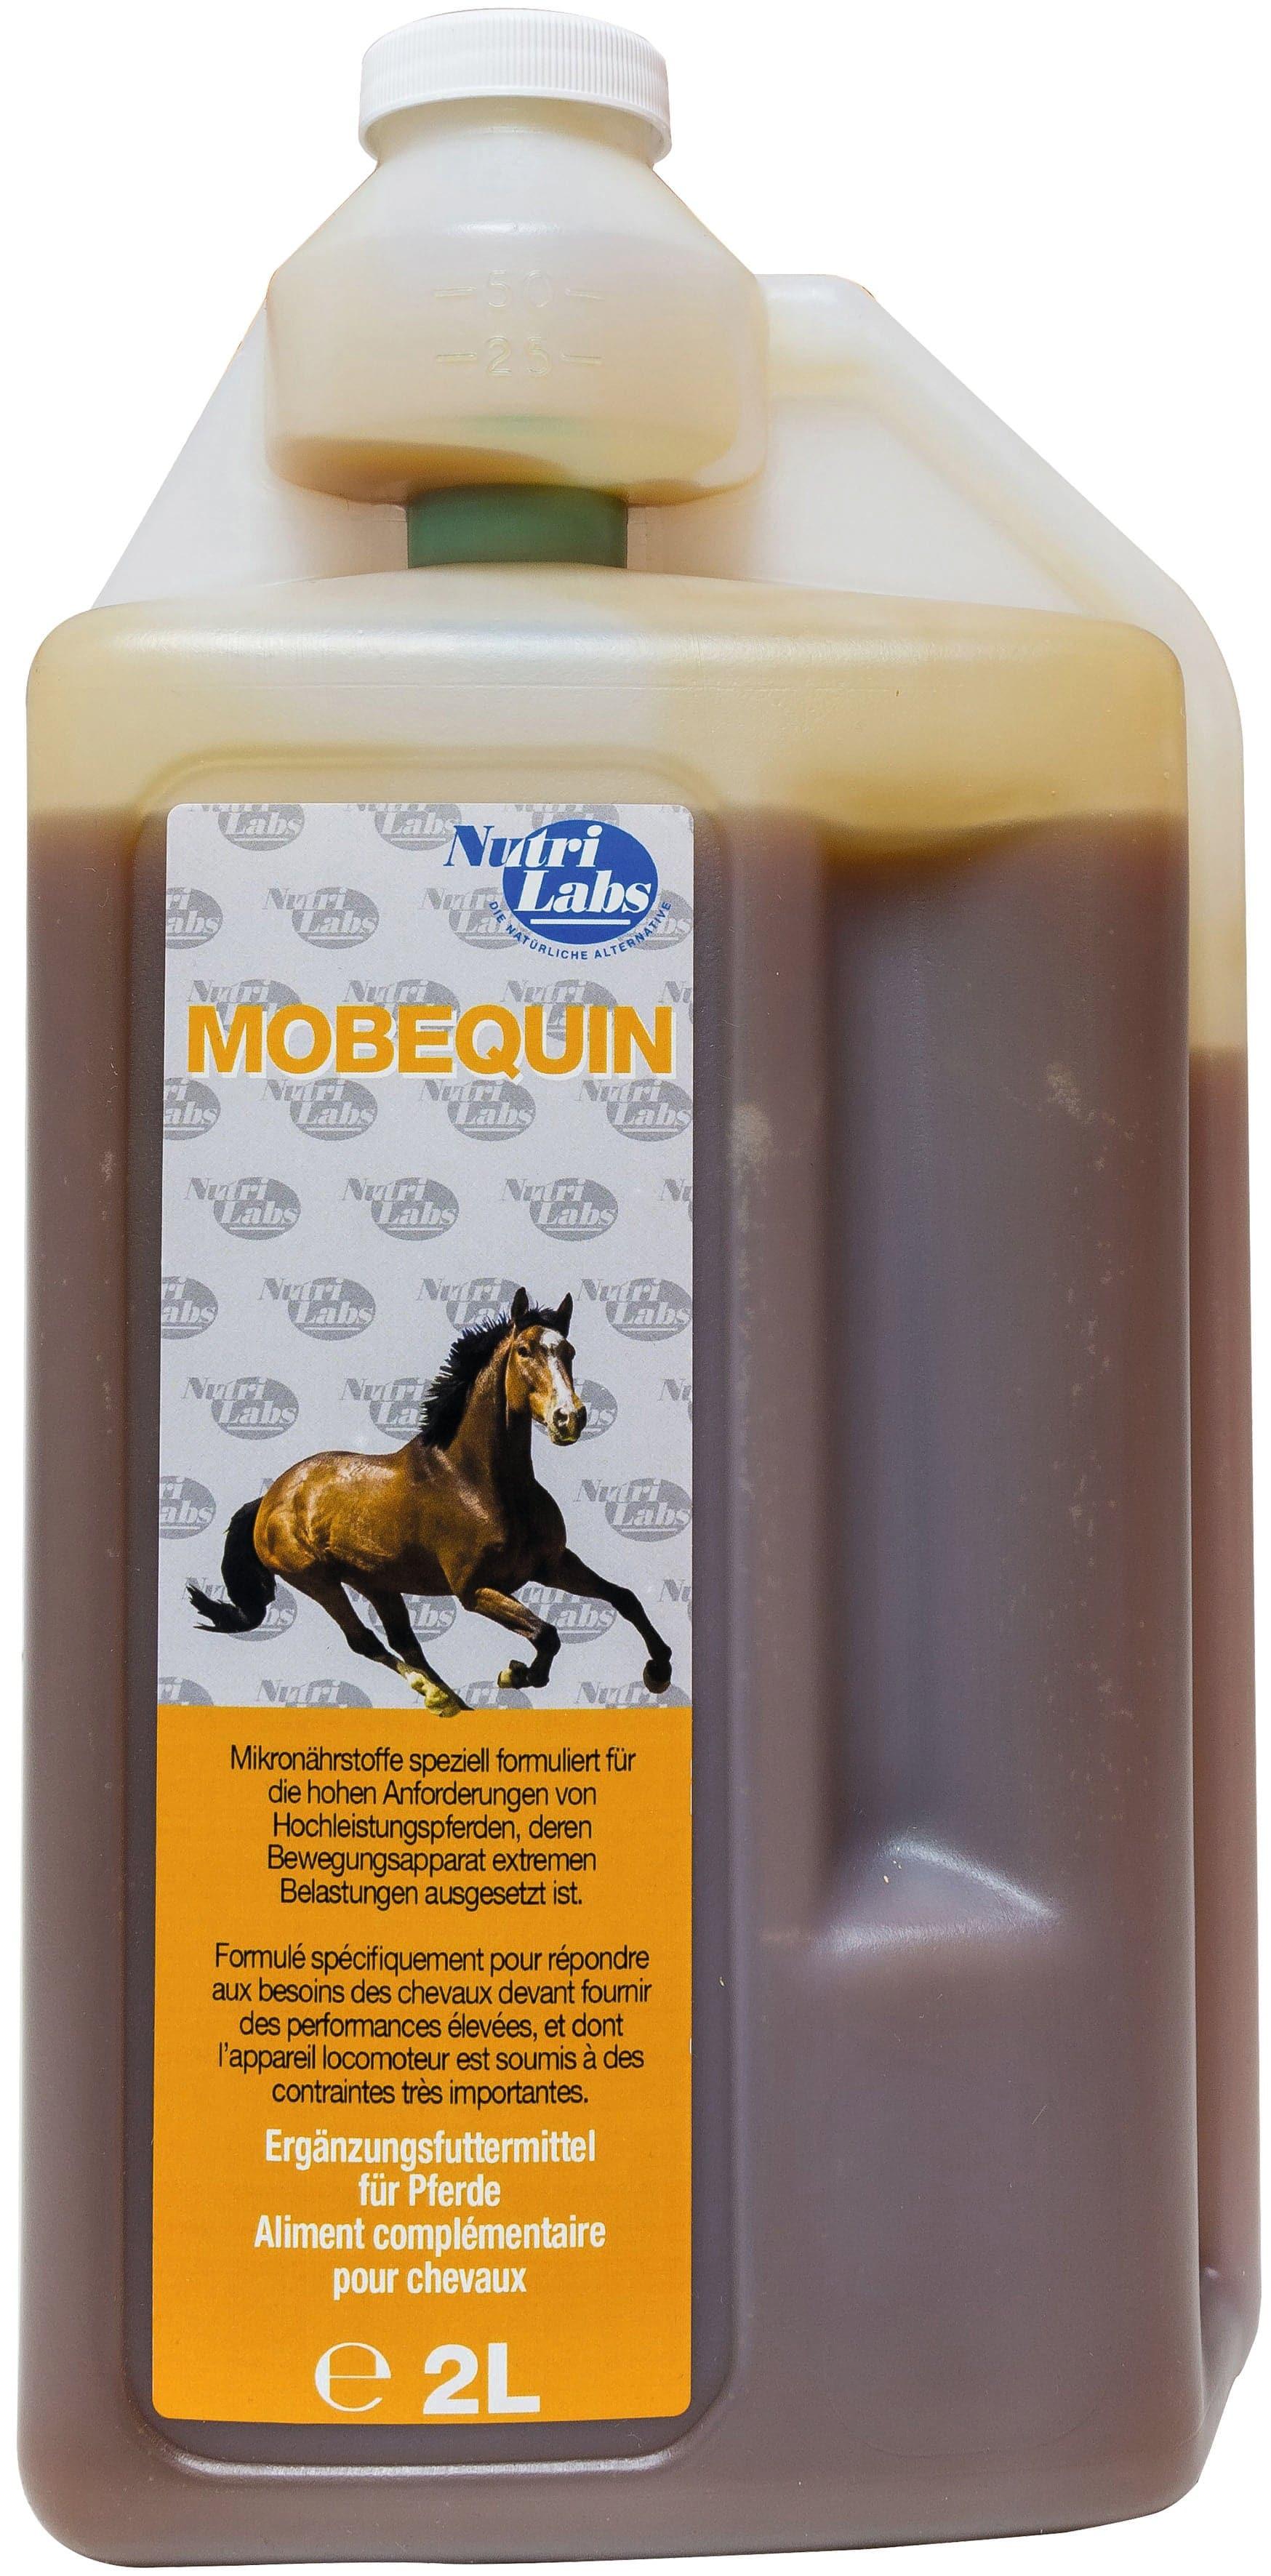 Mobequin - Nutrilabs - Darreichungsform:Flüssigkeit, Ergänzungsfuttermittel:Gelenke, Hersteller:Nutrilabs, Tierart:Pferd - Marigin AG Onlineshop für Tierbedarf